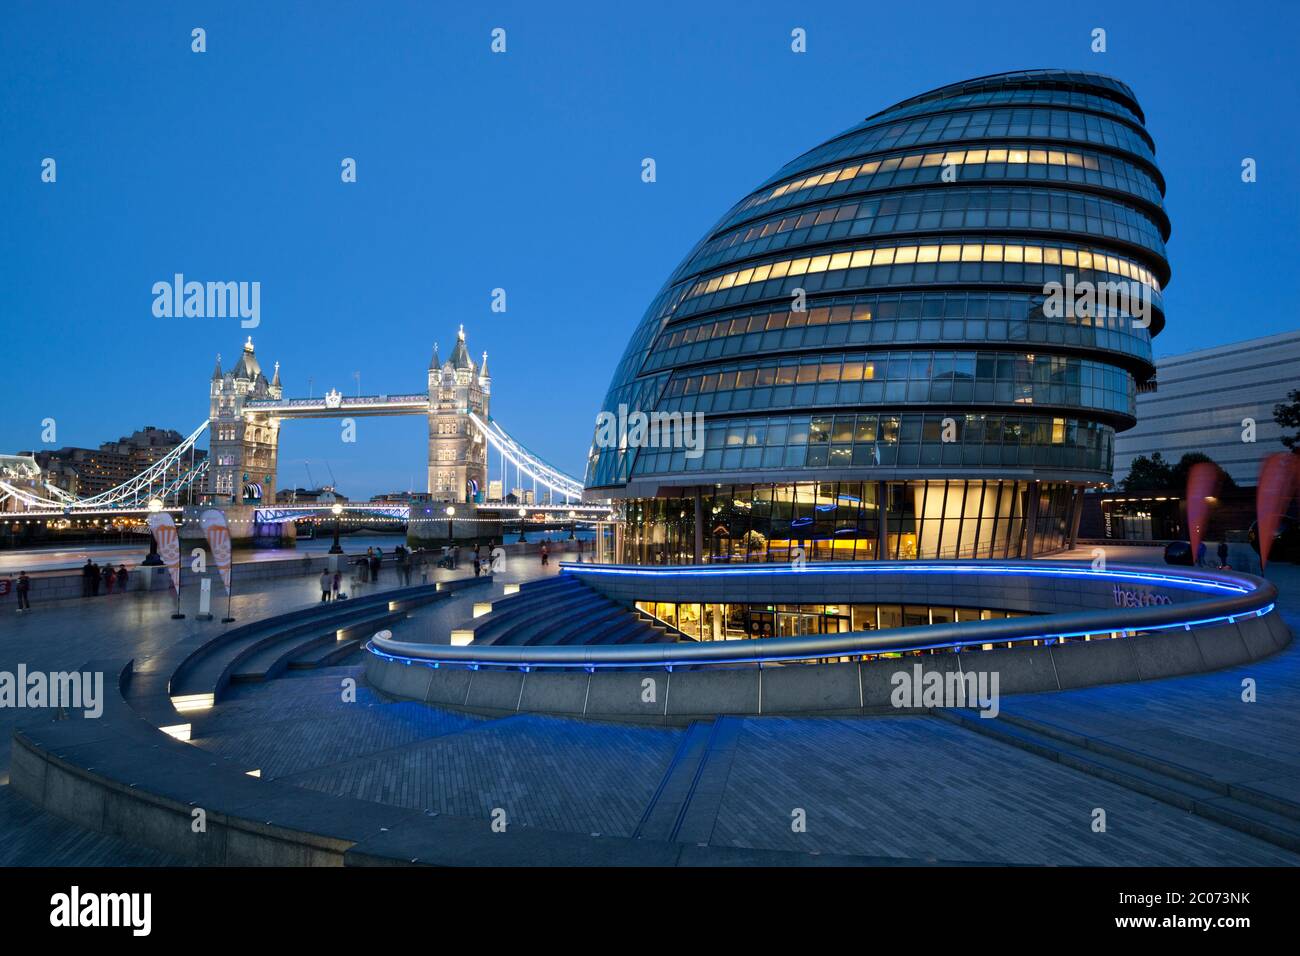 L'Hôtel de ville et le Tower Bridge, London, England, UK Banque D'Images